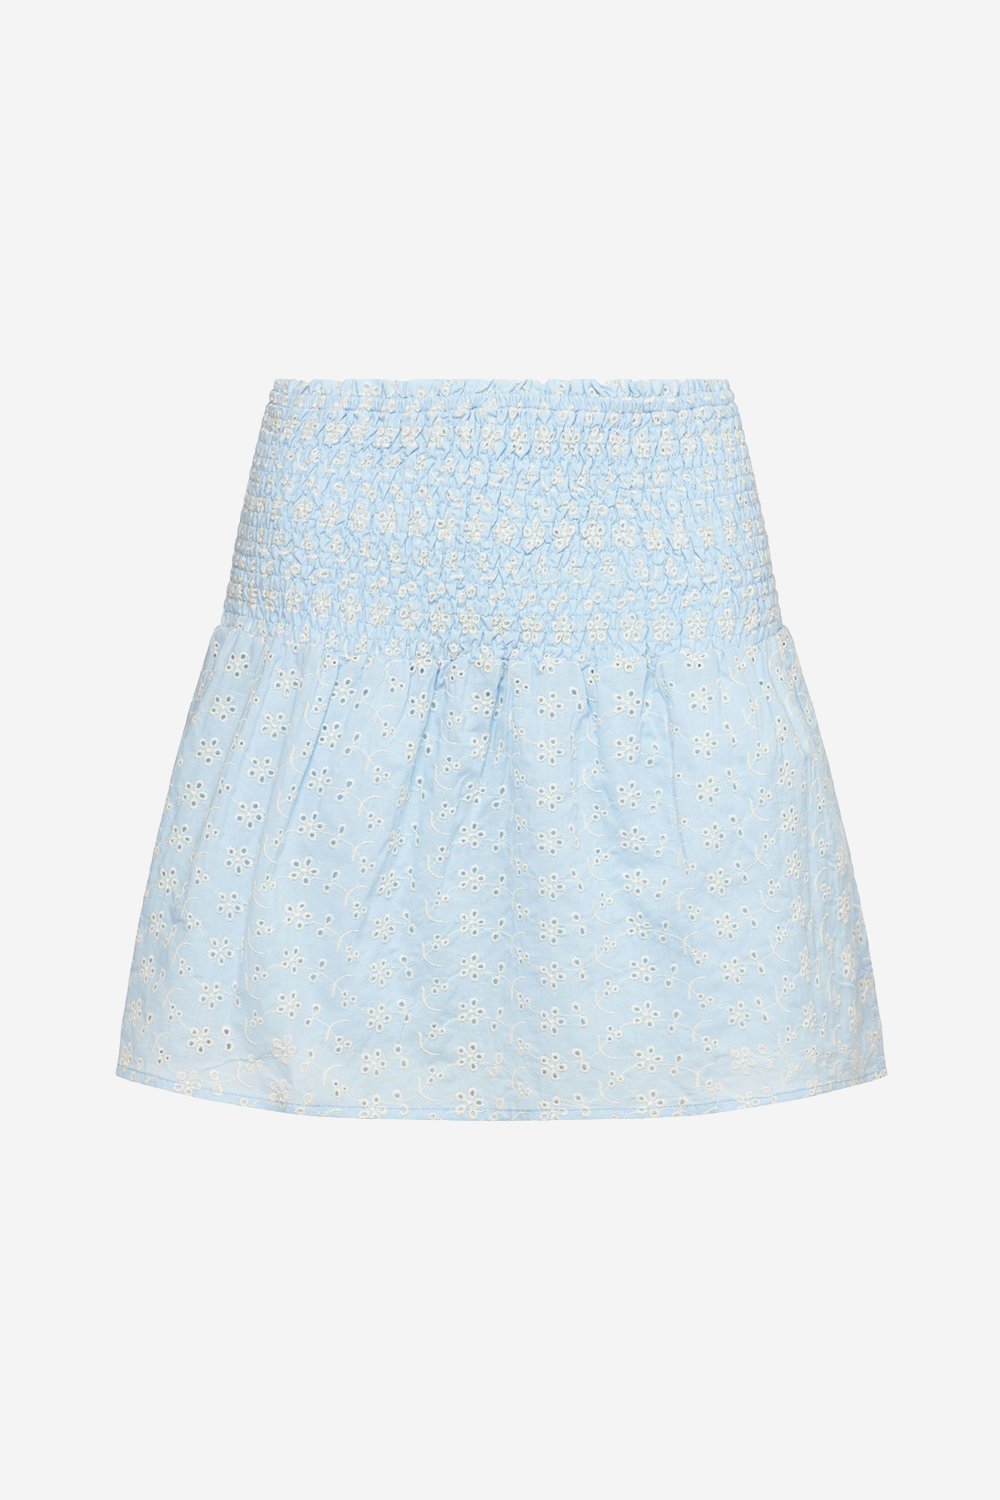 Blossom Skirt Cotton Broderie Lightblue